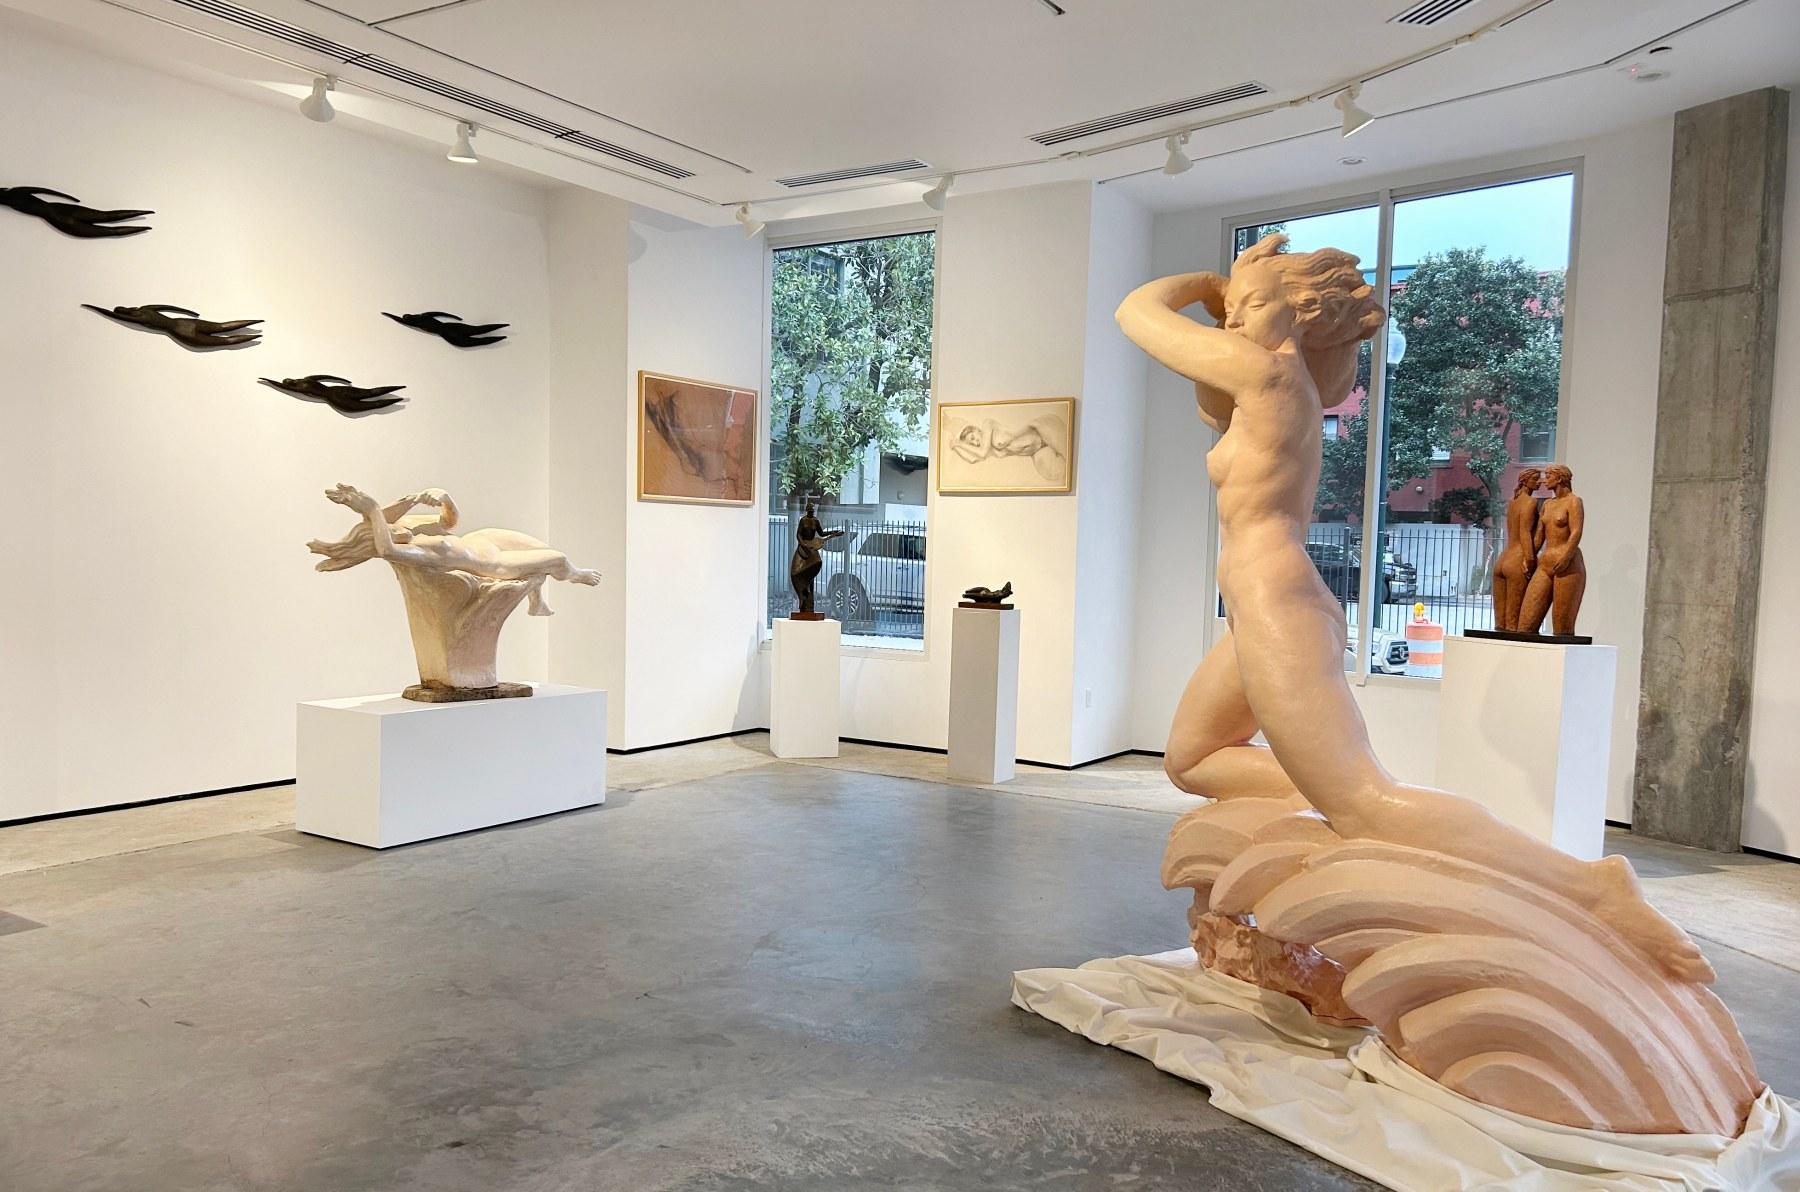 Liegender Akt – Sculpture von Enrique Alférez